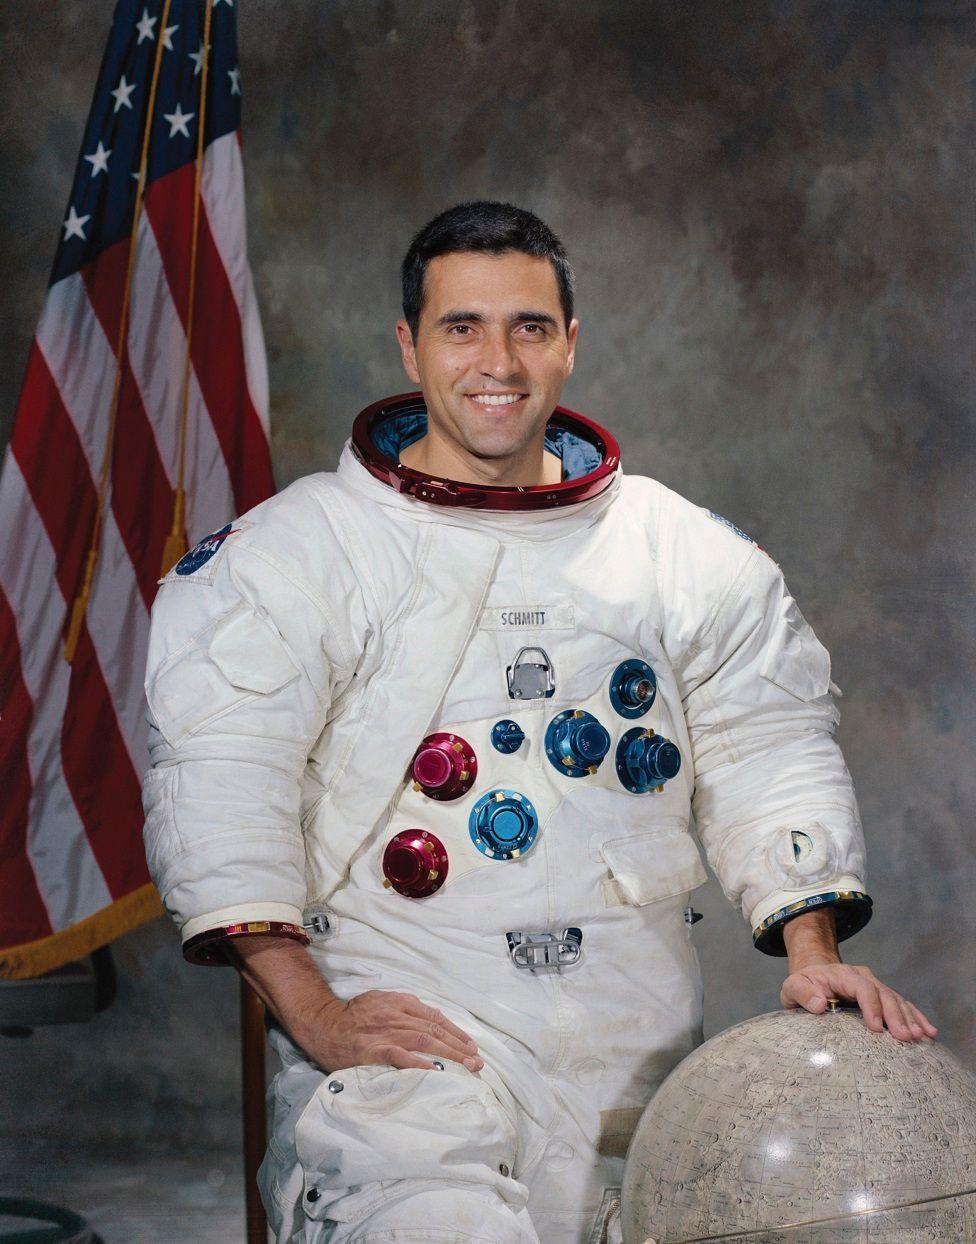 Harrison Schmitt con su traje de astronauta